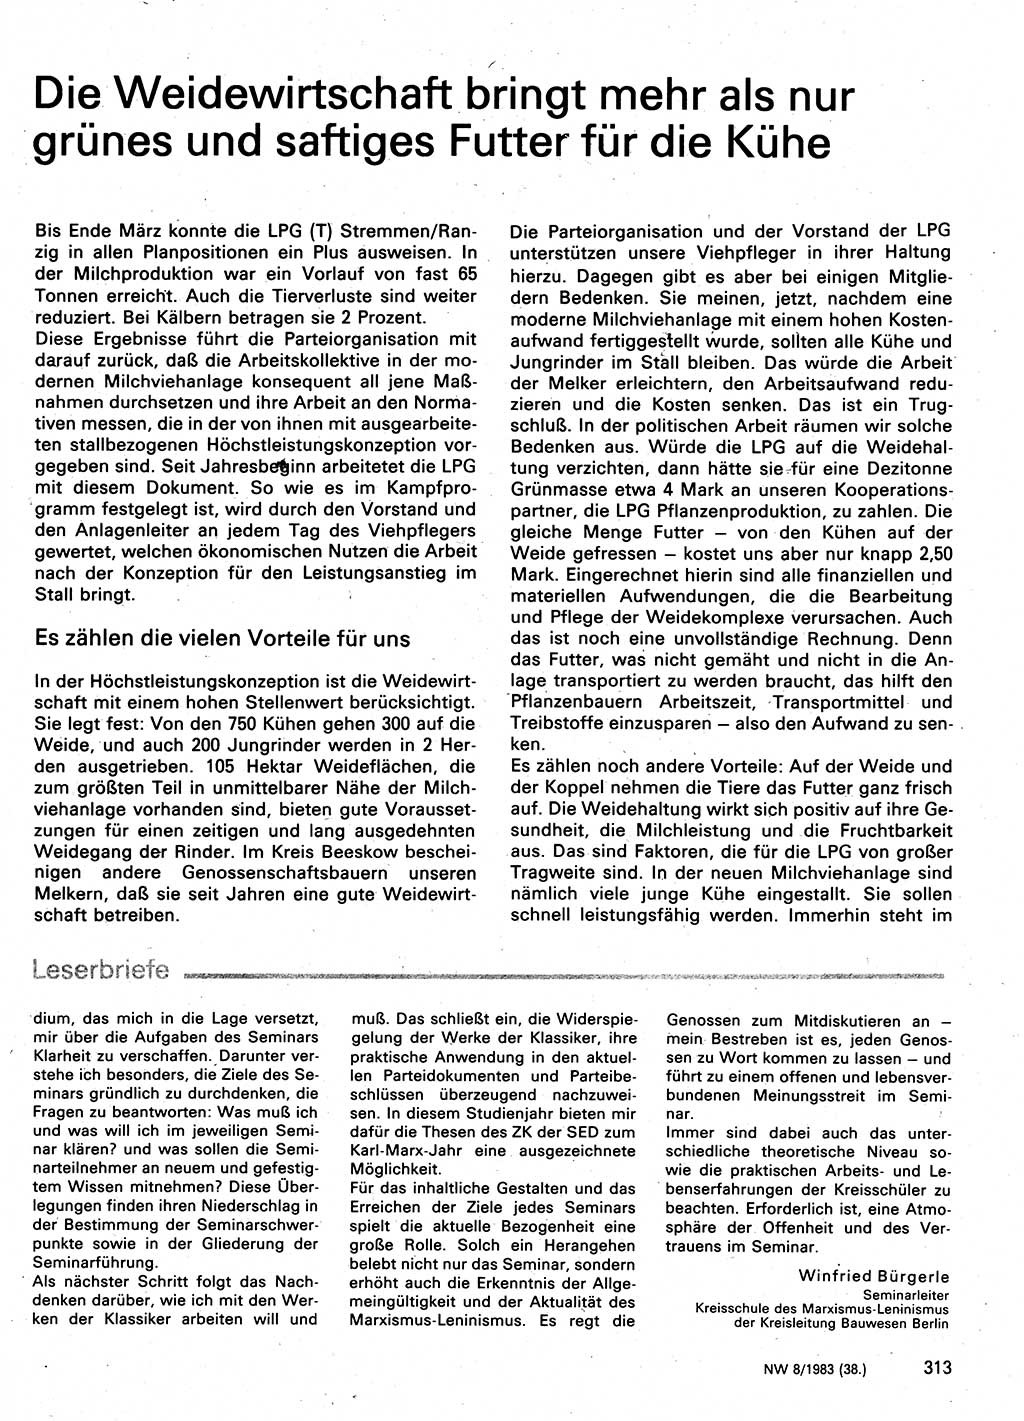 Neuer Weg (NW), Organ des Zentralkomitees (ZK) der SED (Sozialistische Einheitspartei Deutschlands) für Fragen des Parteilebens, 38. Jahrgang [Deutsche Demokratische Republik (DDR)] 1983, Seite 313 (NW ZK SED DDR 1983, S. 313)